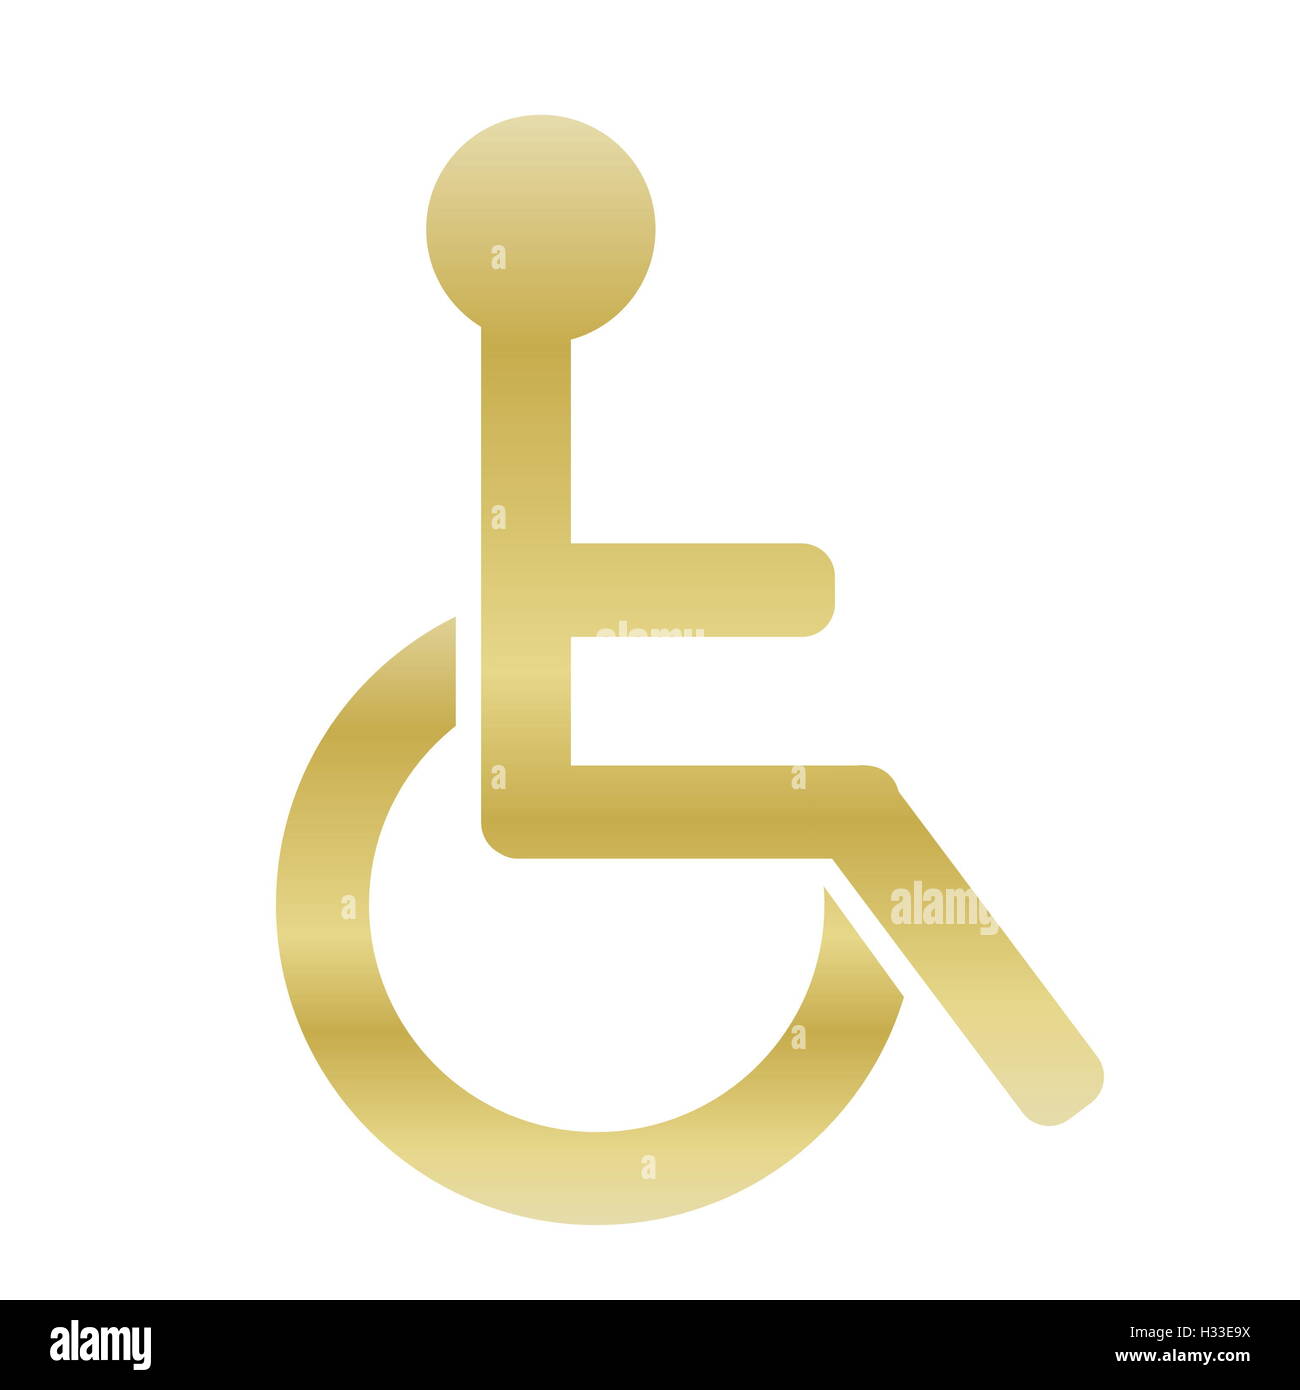 Golden handicap icon Stock Photo